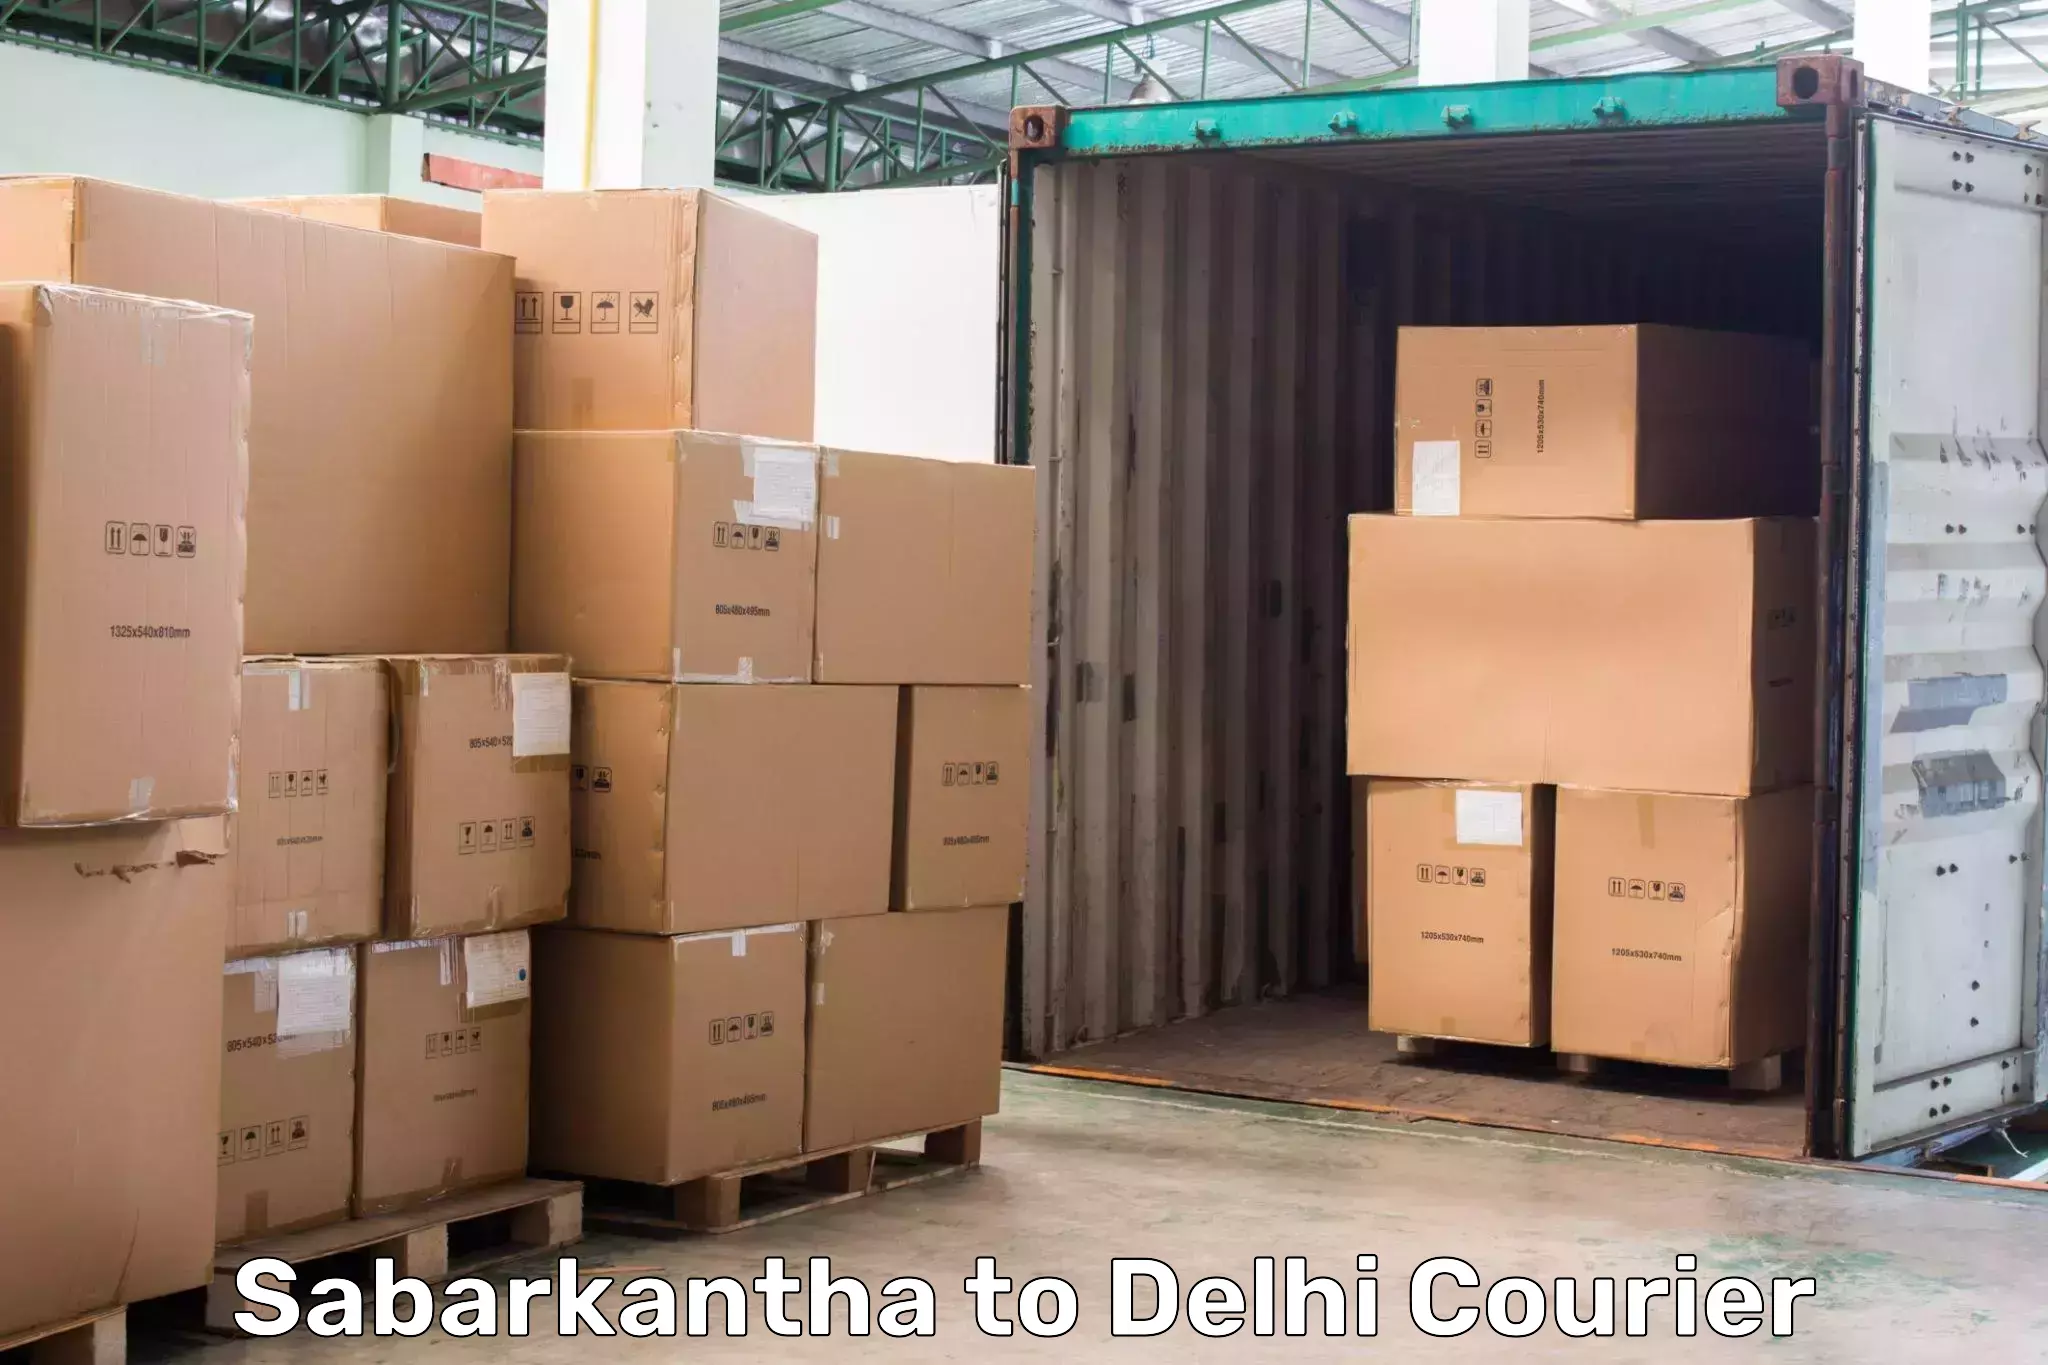 Subscription-based courier Sabarkantha to East Delhi